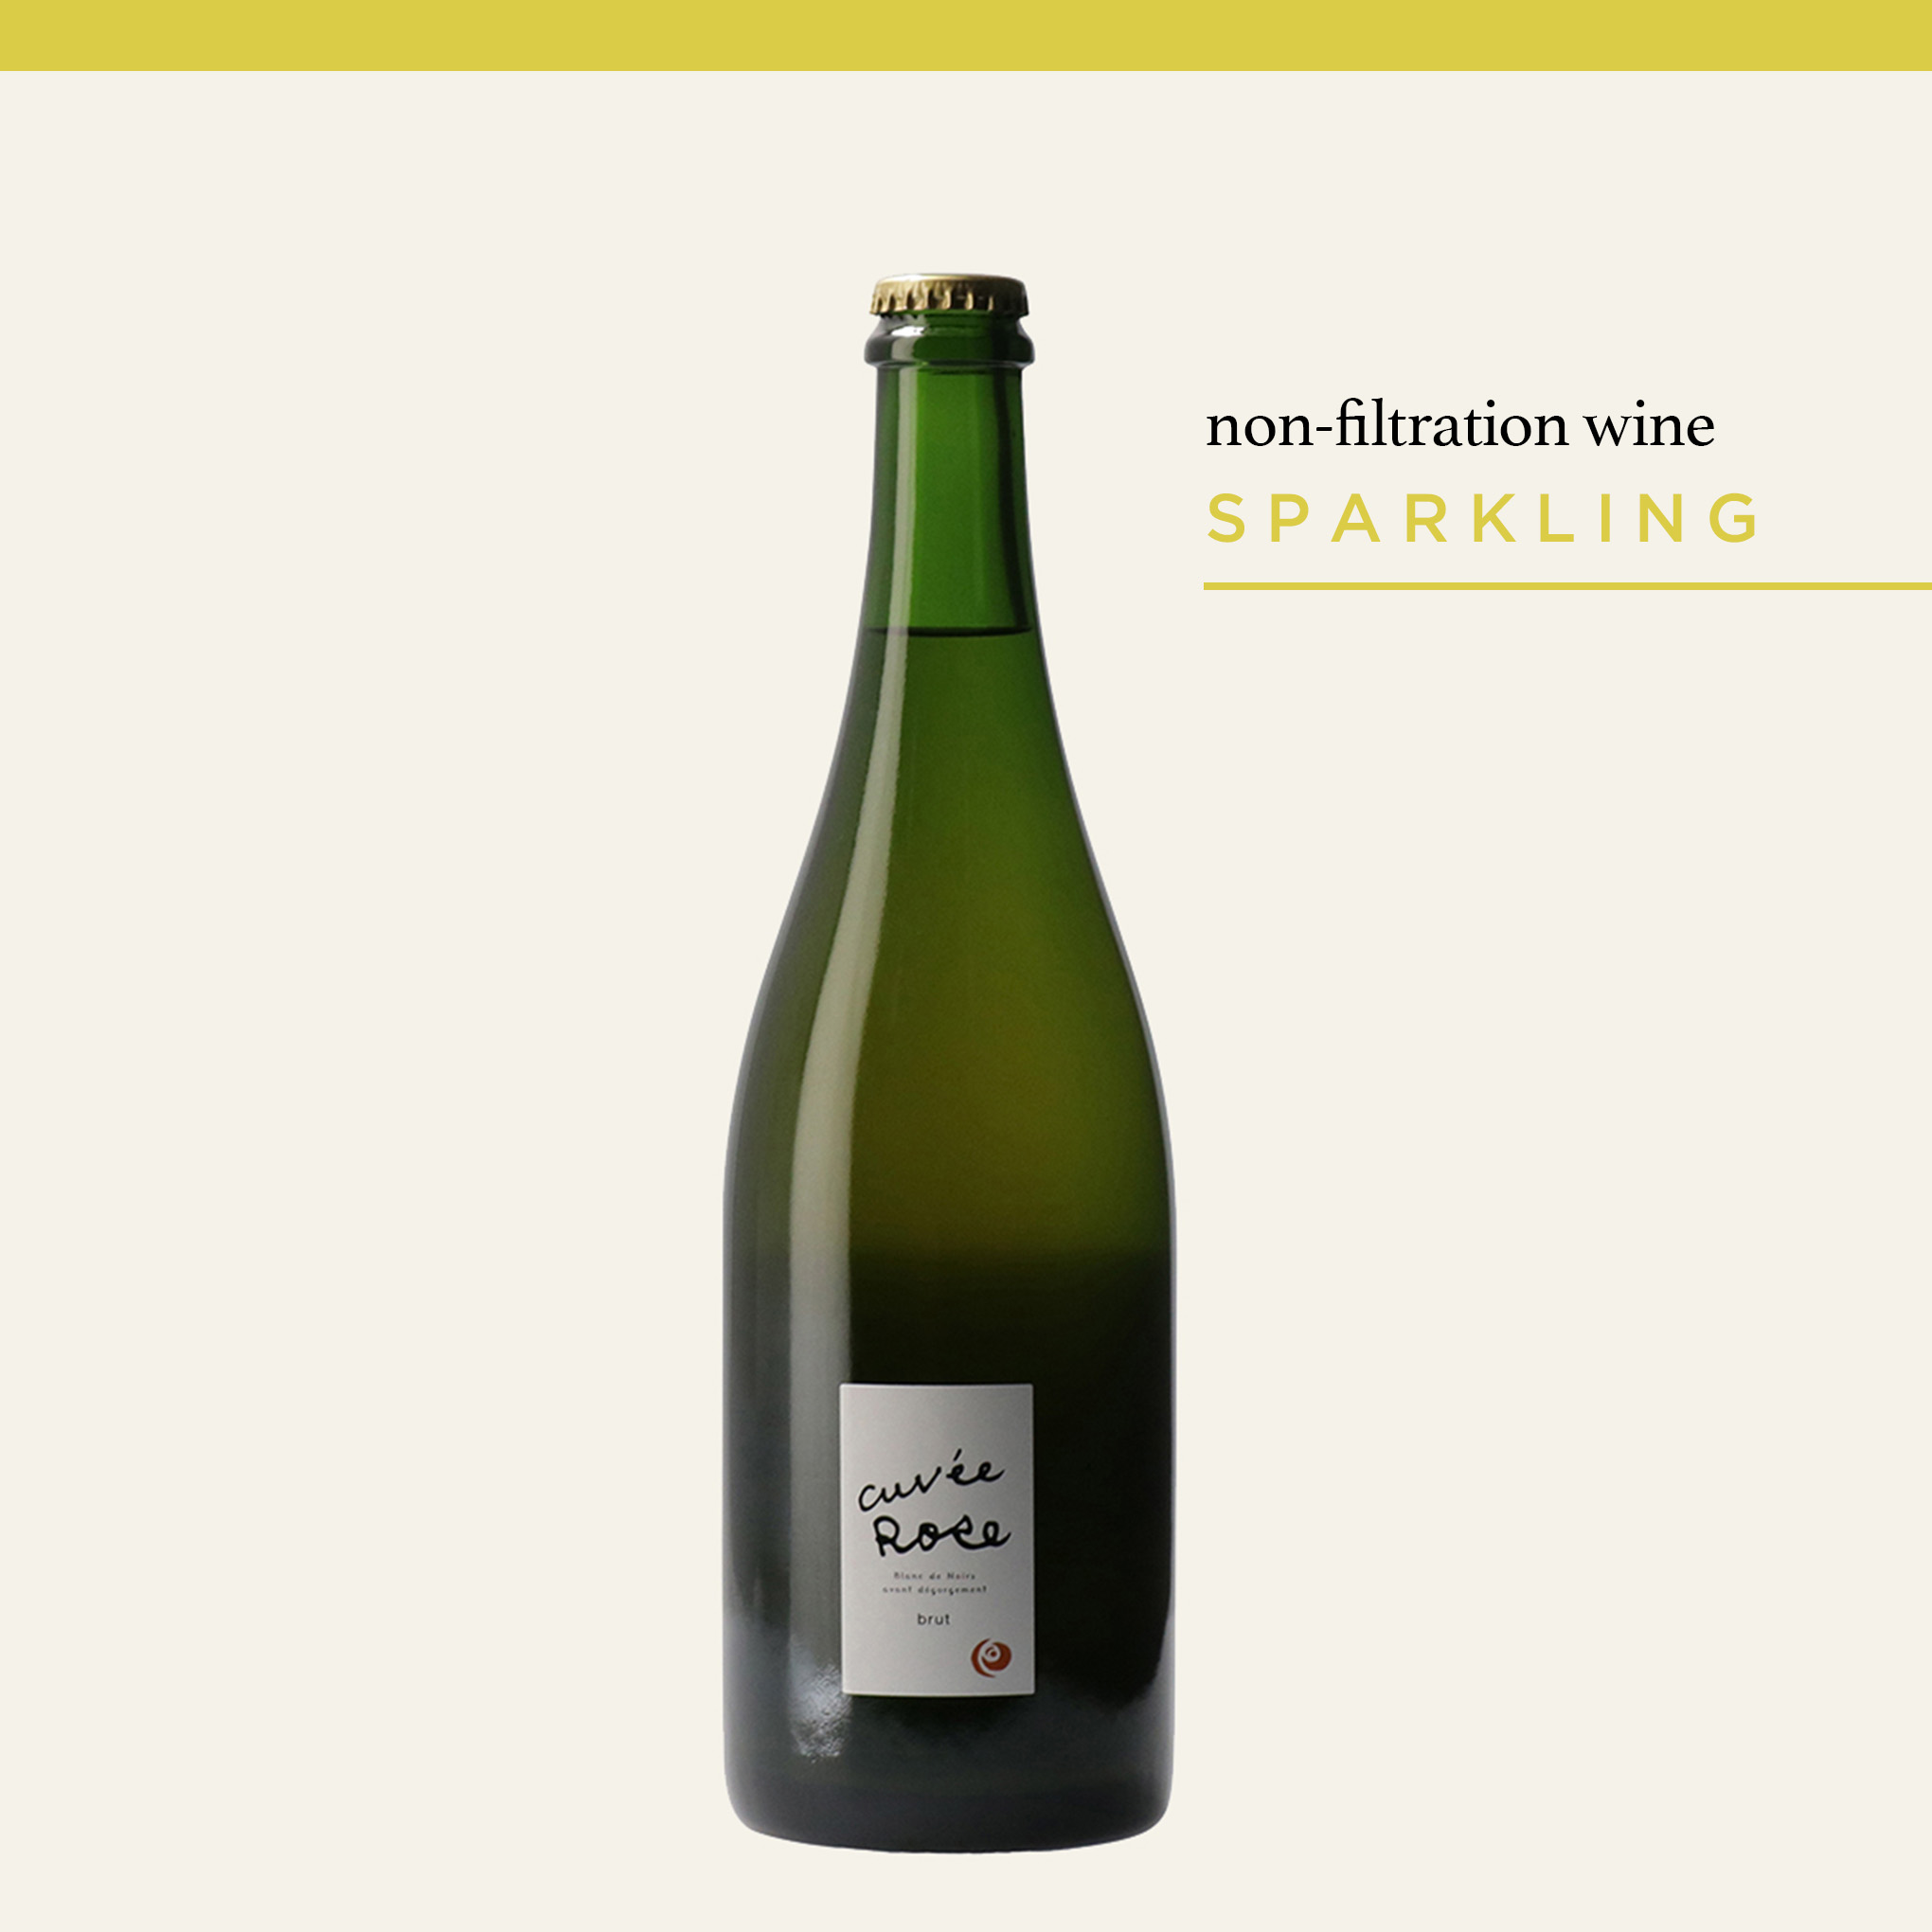 シャンパーニュ製法ながらも、澱を残した面白いスタイルの瓶内二次発酵スパークリングワイン『Cuvée Rose 2019 brut』。